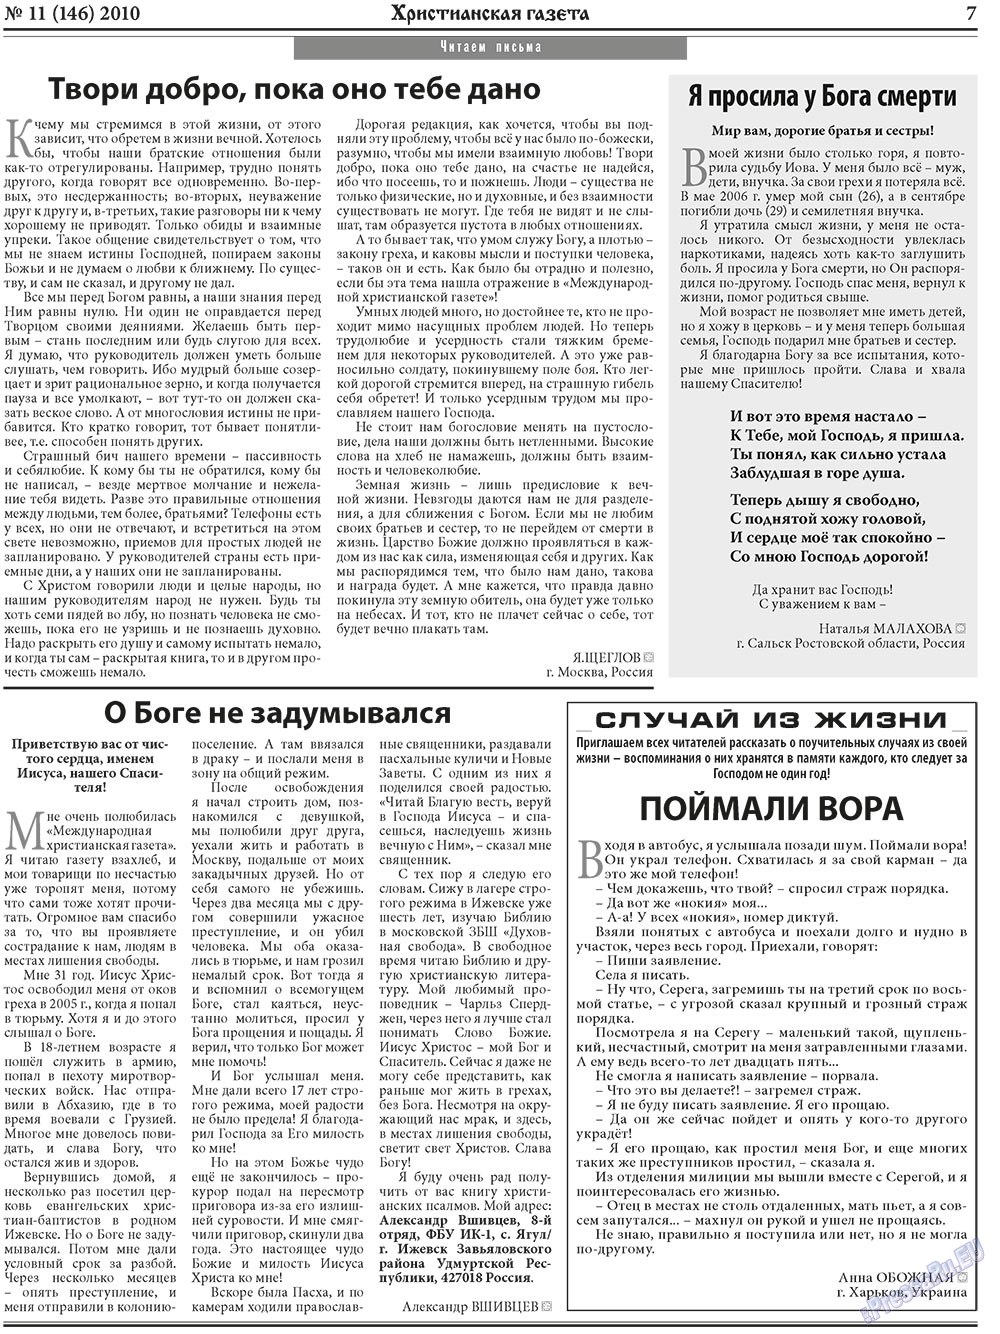 Христианская газета, газета. 2010 №11 стр.7